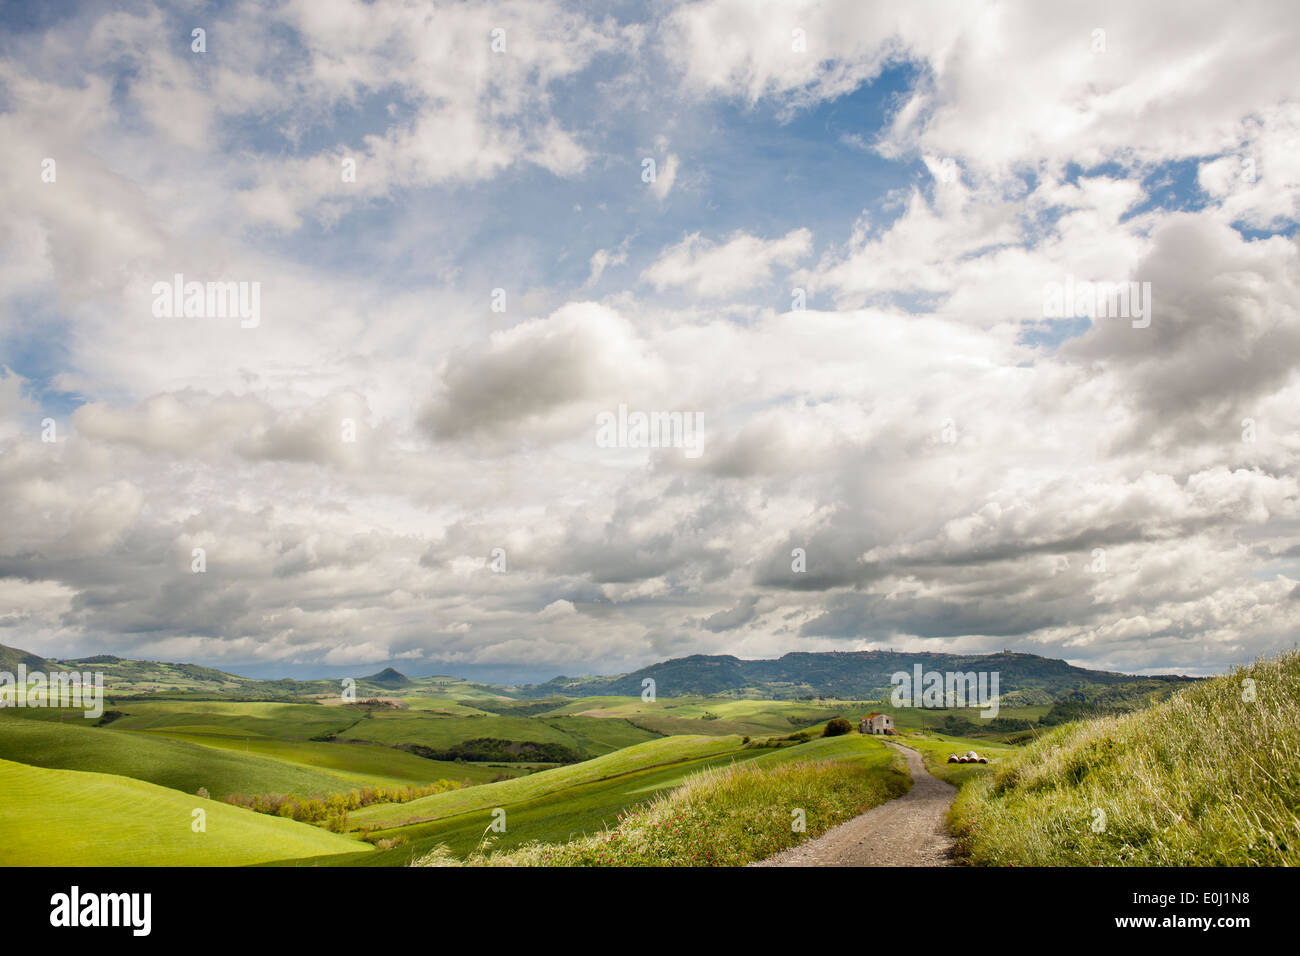 Tuscany countryside, Italy. Stock Photo